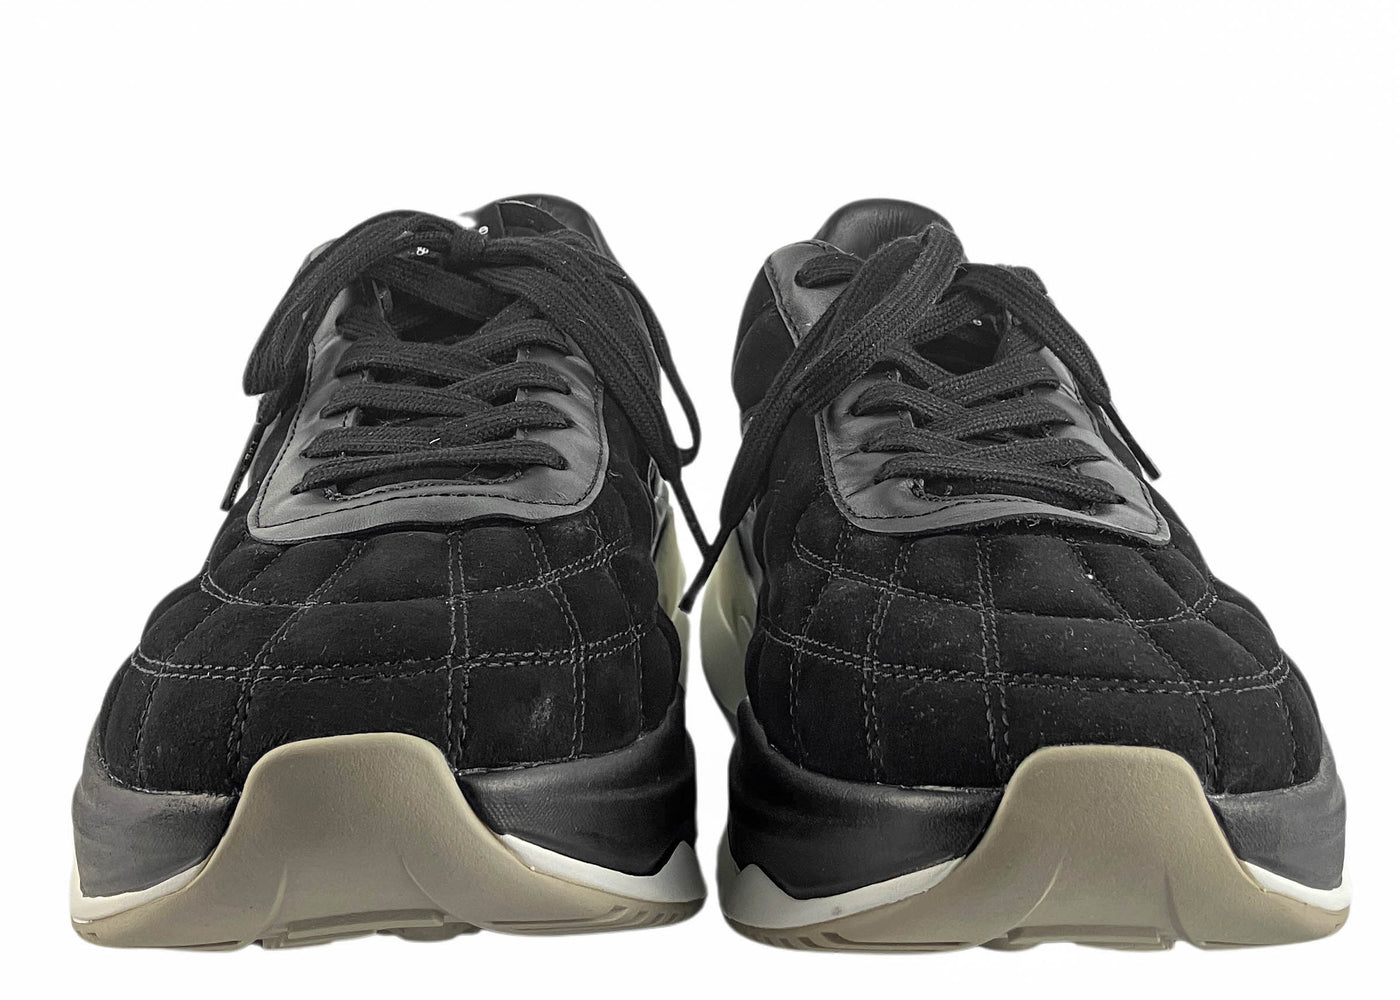 rag & bone Legacy Runner Sneakers in Black Suede - Discounts on Rag & Bone at UAL